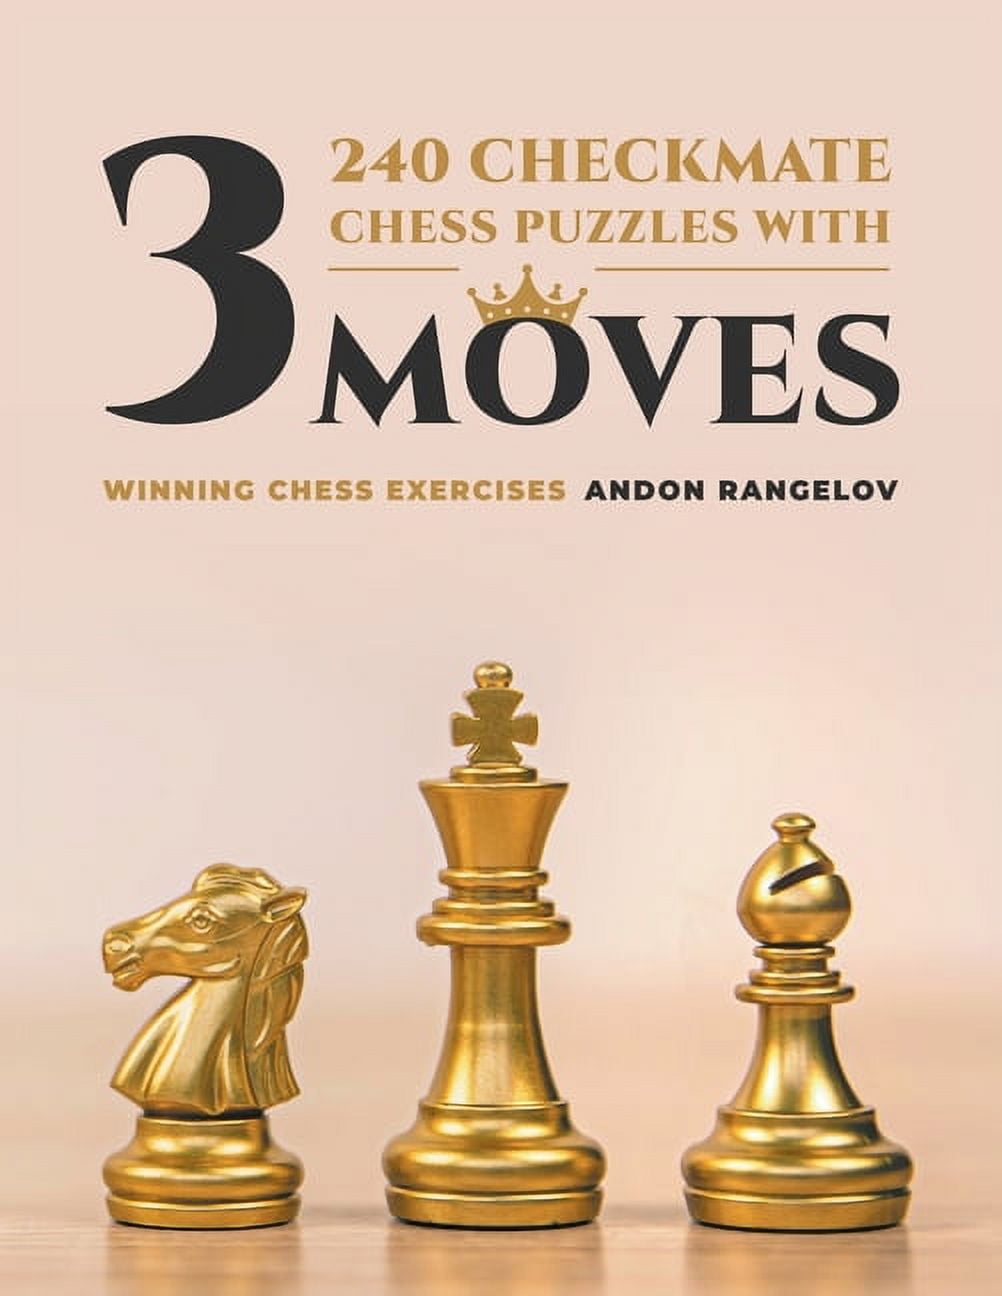 Chess Puzzles  Chess puzzles, Chess tactics, Chess